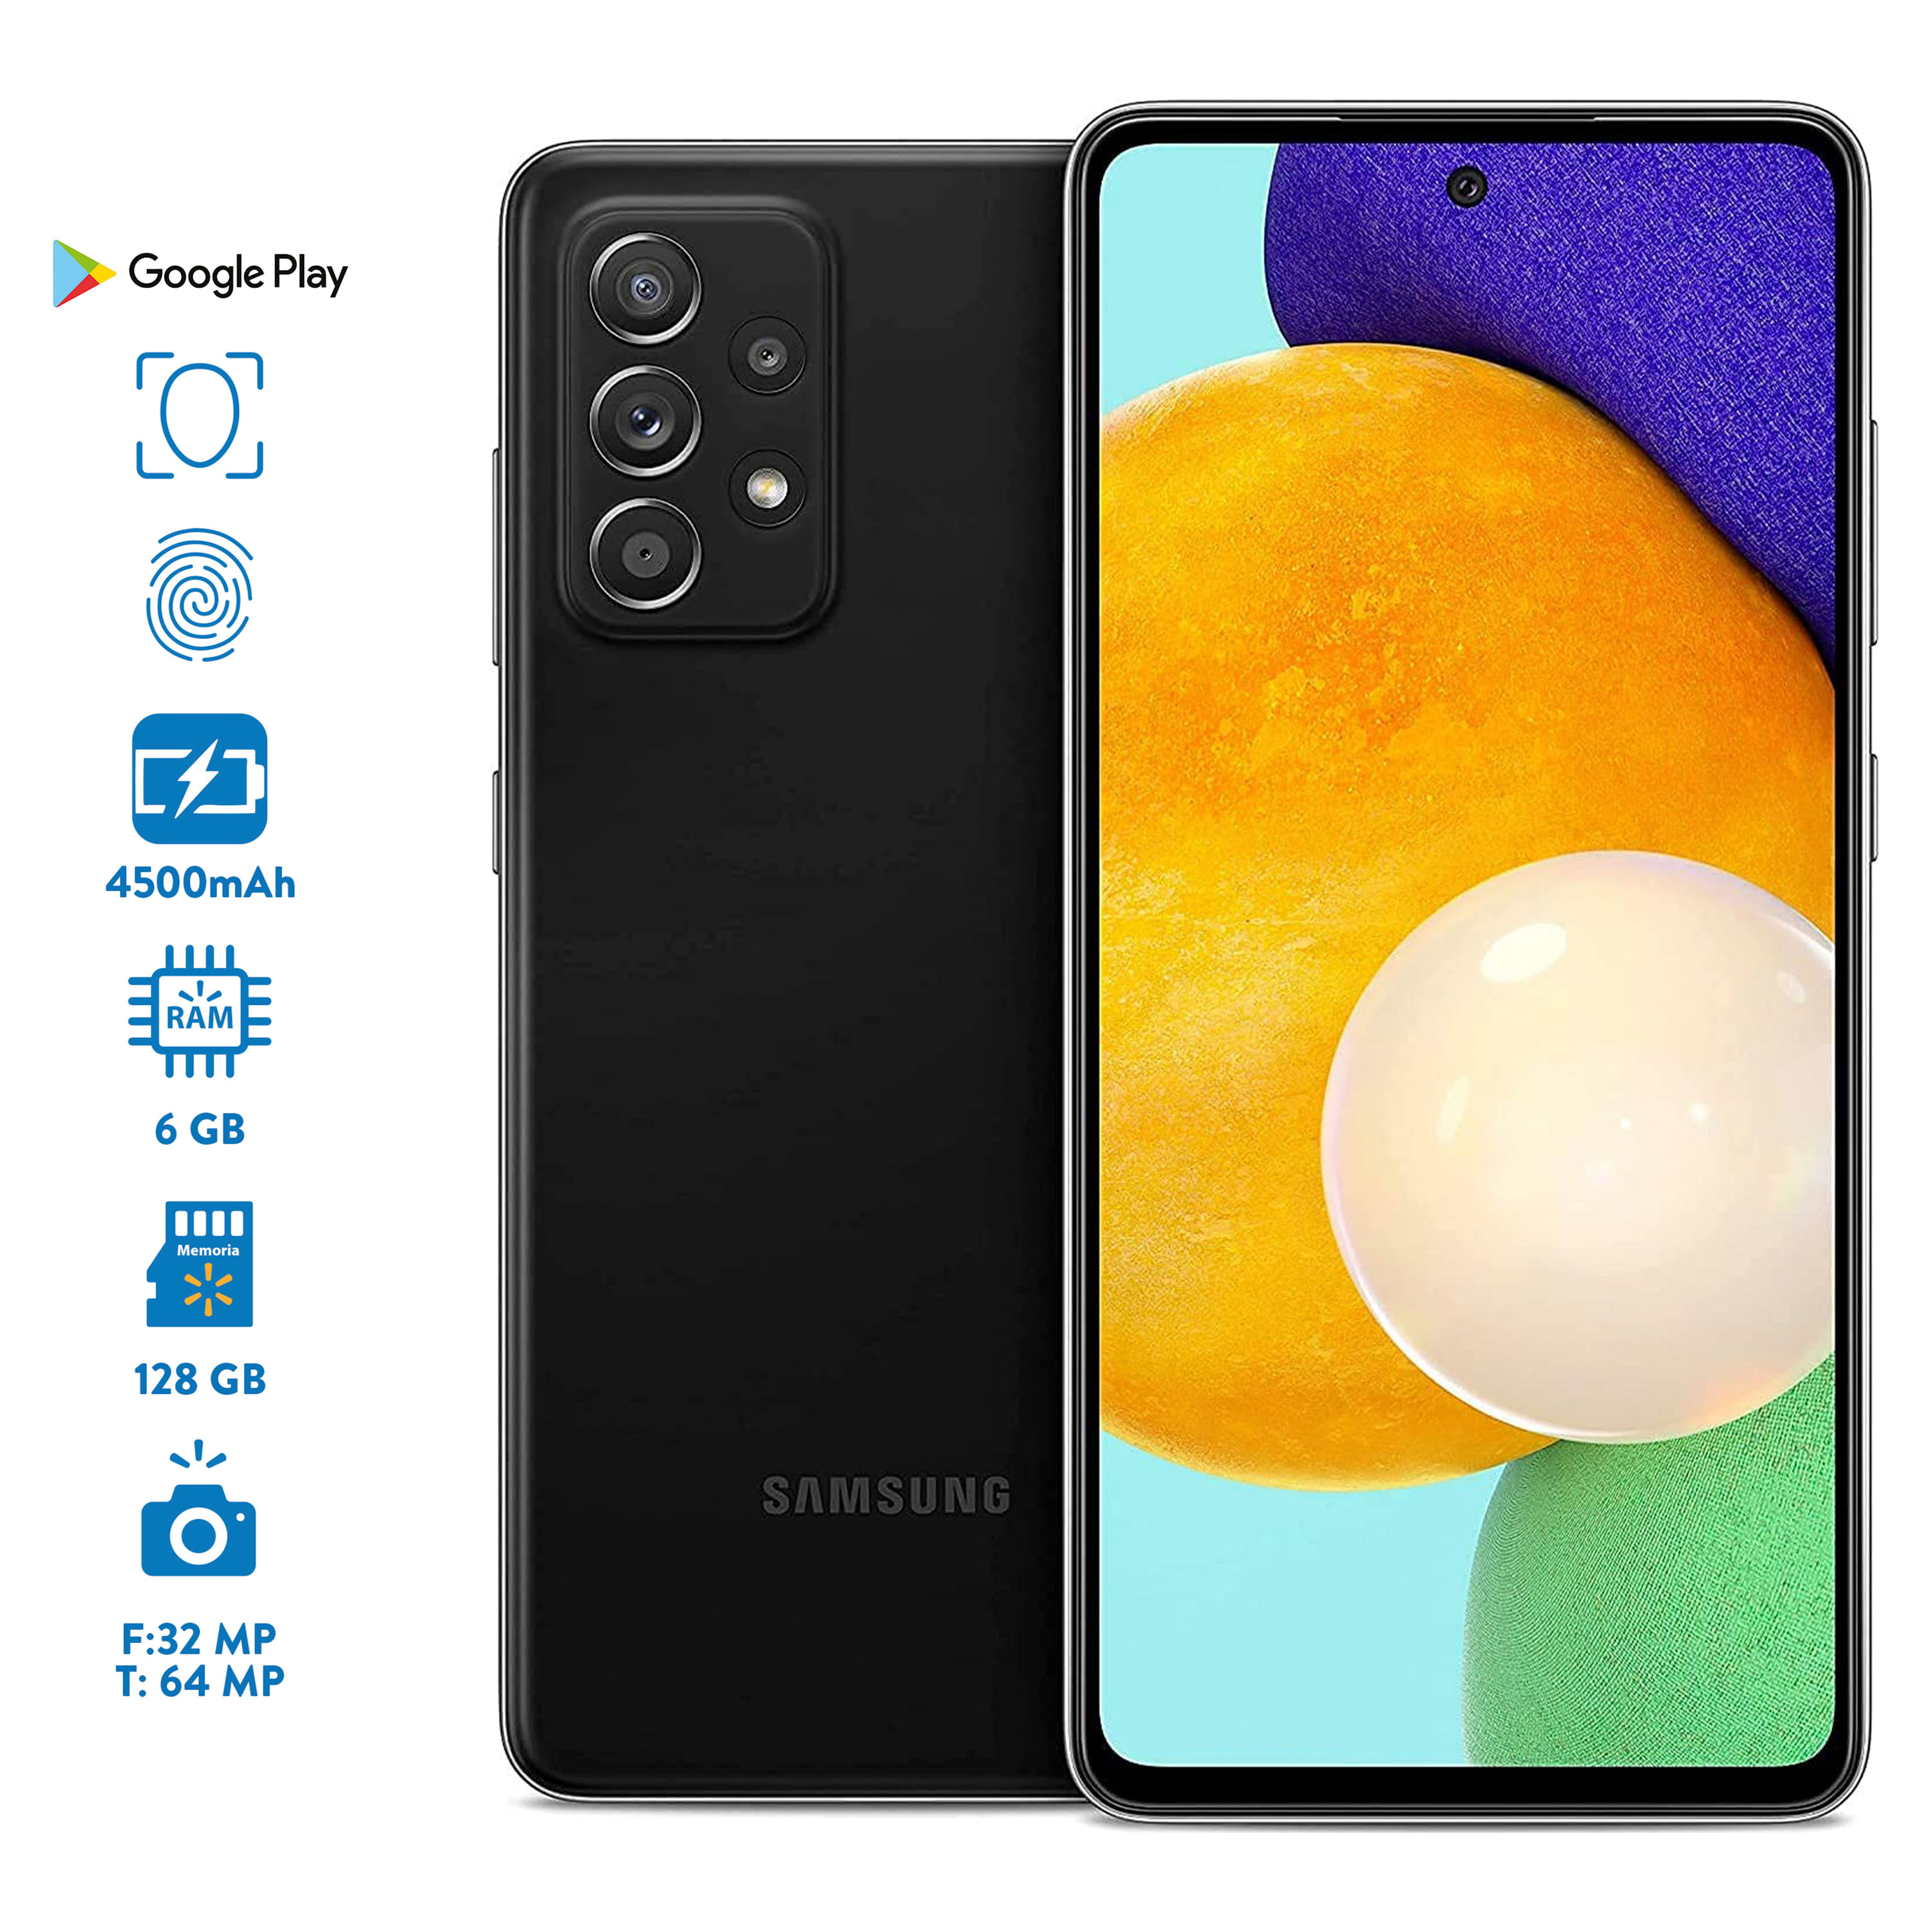 Samsung-Galaxy-Celular-A52-Dual-Sim-1-42258